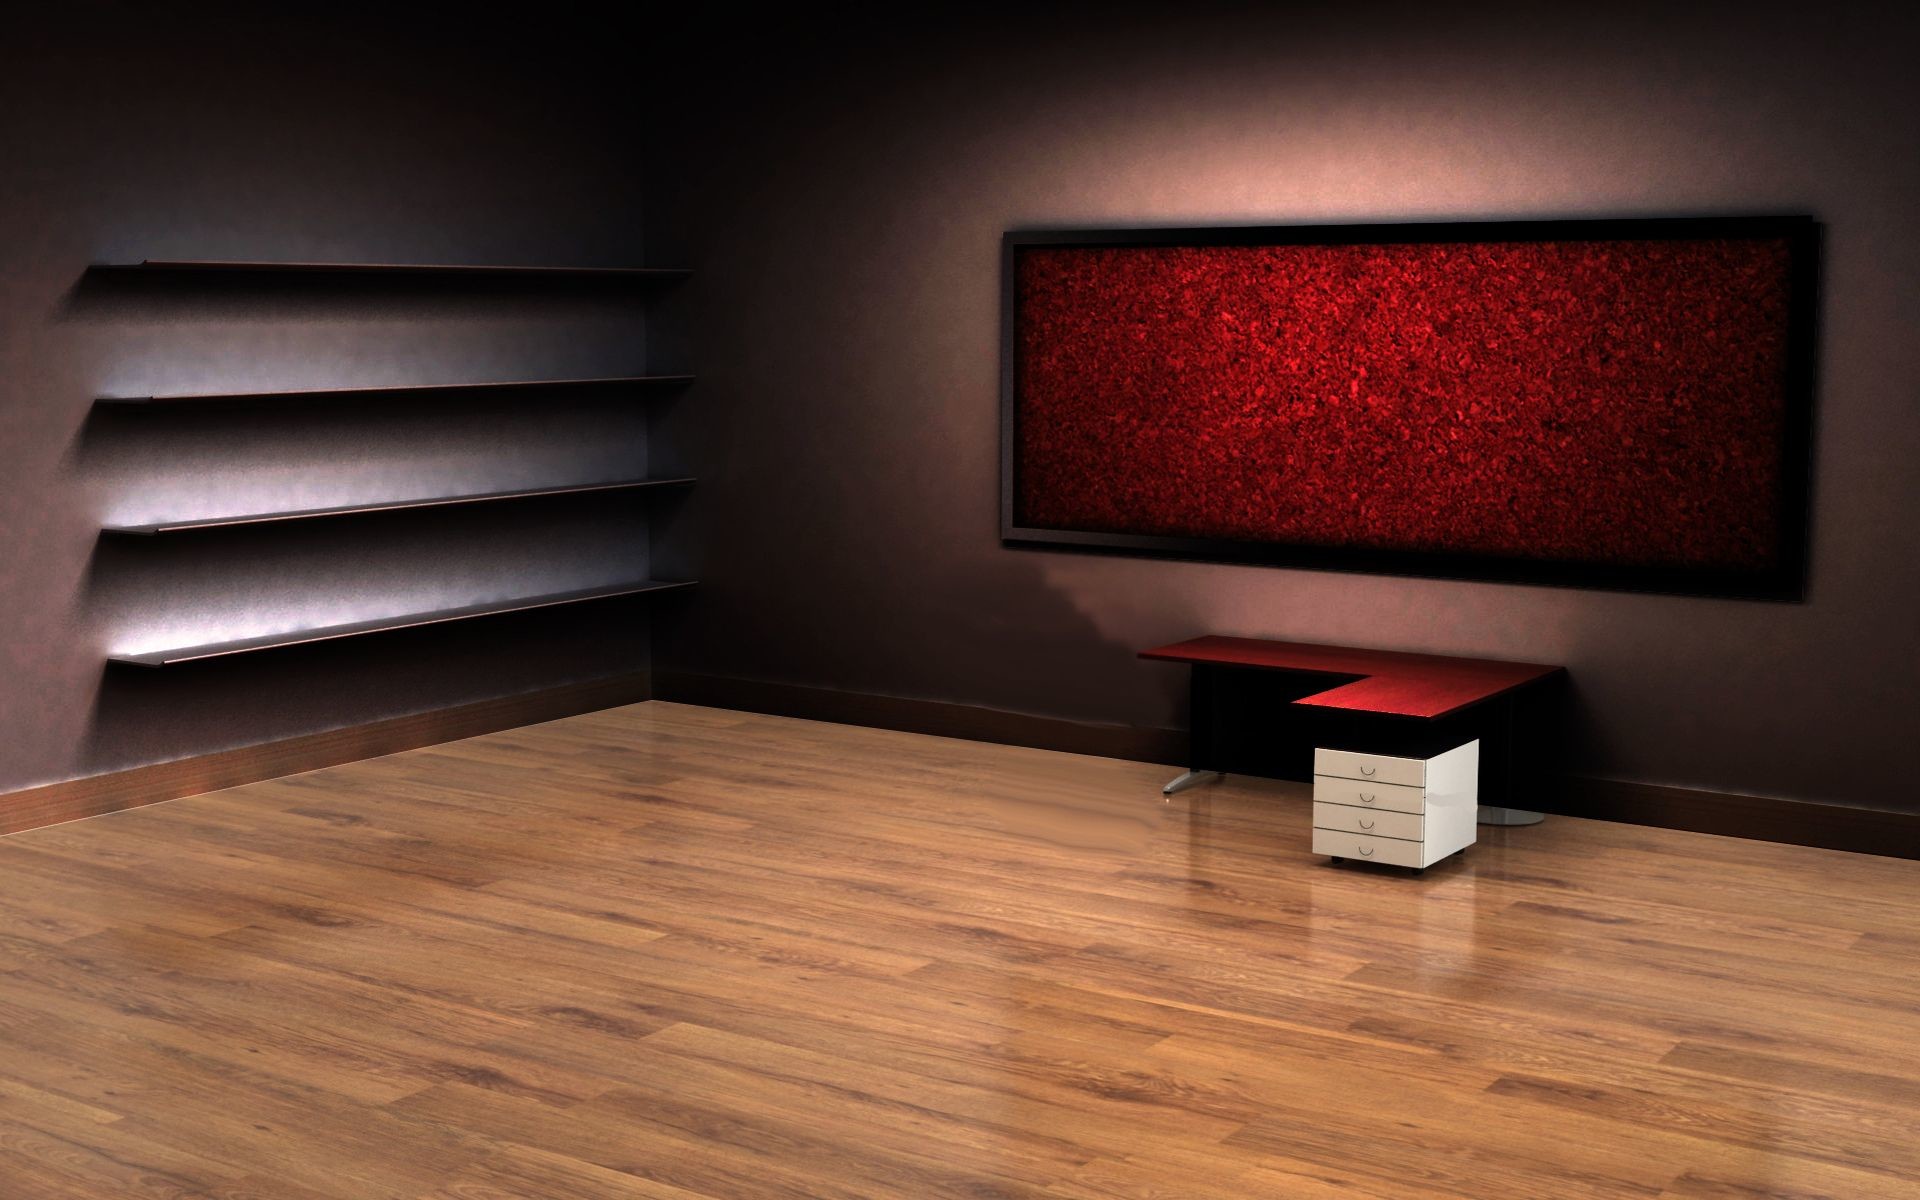 Hình nền phòng trống 3D sẽ khiến cho căn phòng của bạn trở nên thú vị và độc đáo hơn bao giờ hết. Với các chi tiết phong phú và không gian ảo tuyệt vời, bạn sẽ cảm thấy thoải mái và thoải mái mỗi lần ngồi trước máy tính. Hãy cùng khám phá và tận hưởng hình ảnh nền phòng trống 3D đầy tuyệt vời này.